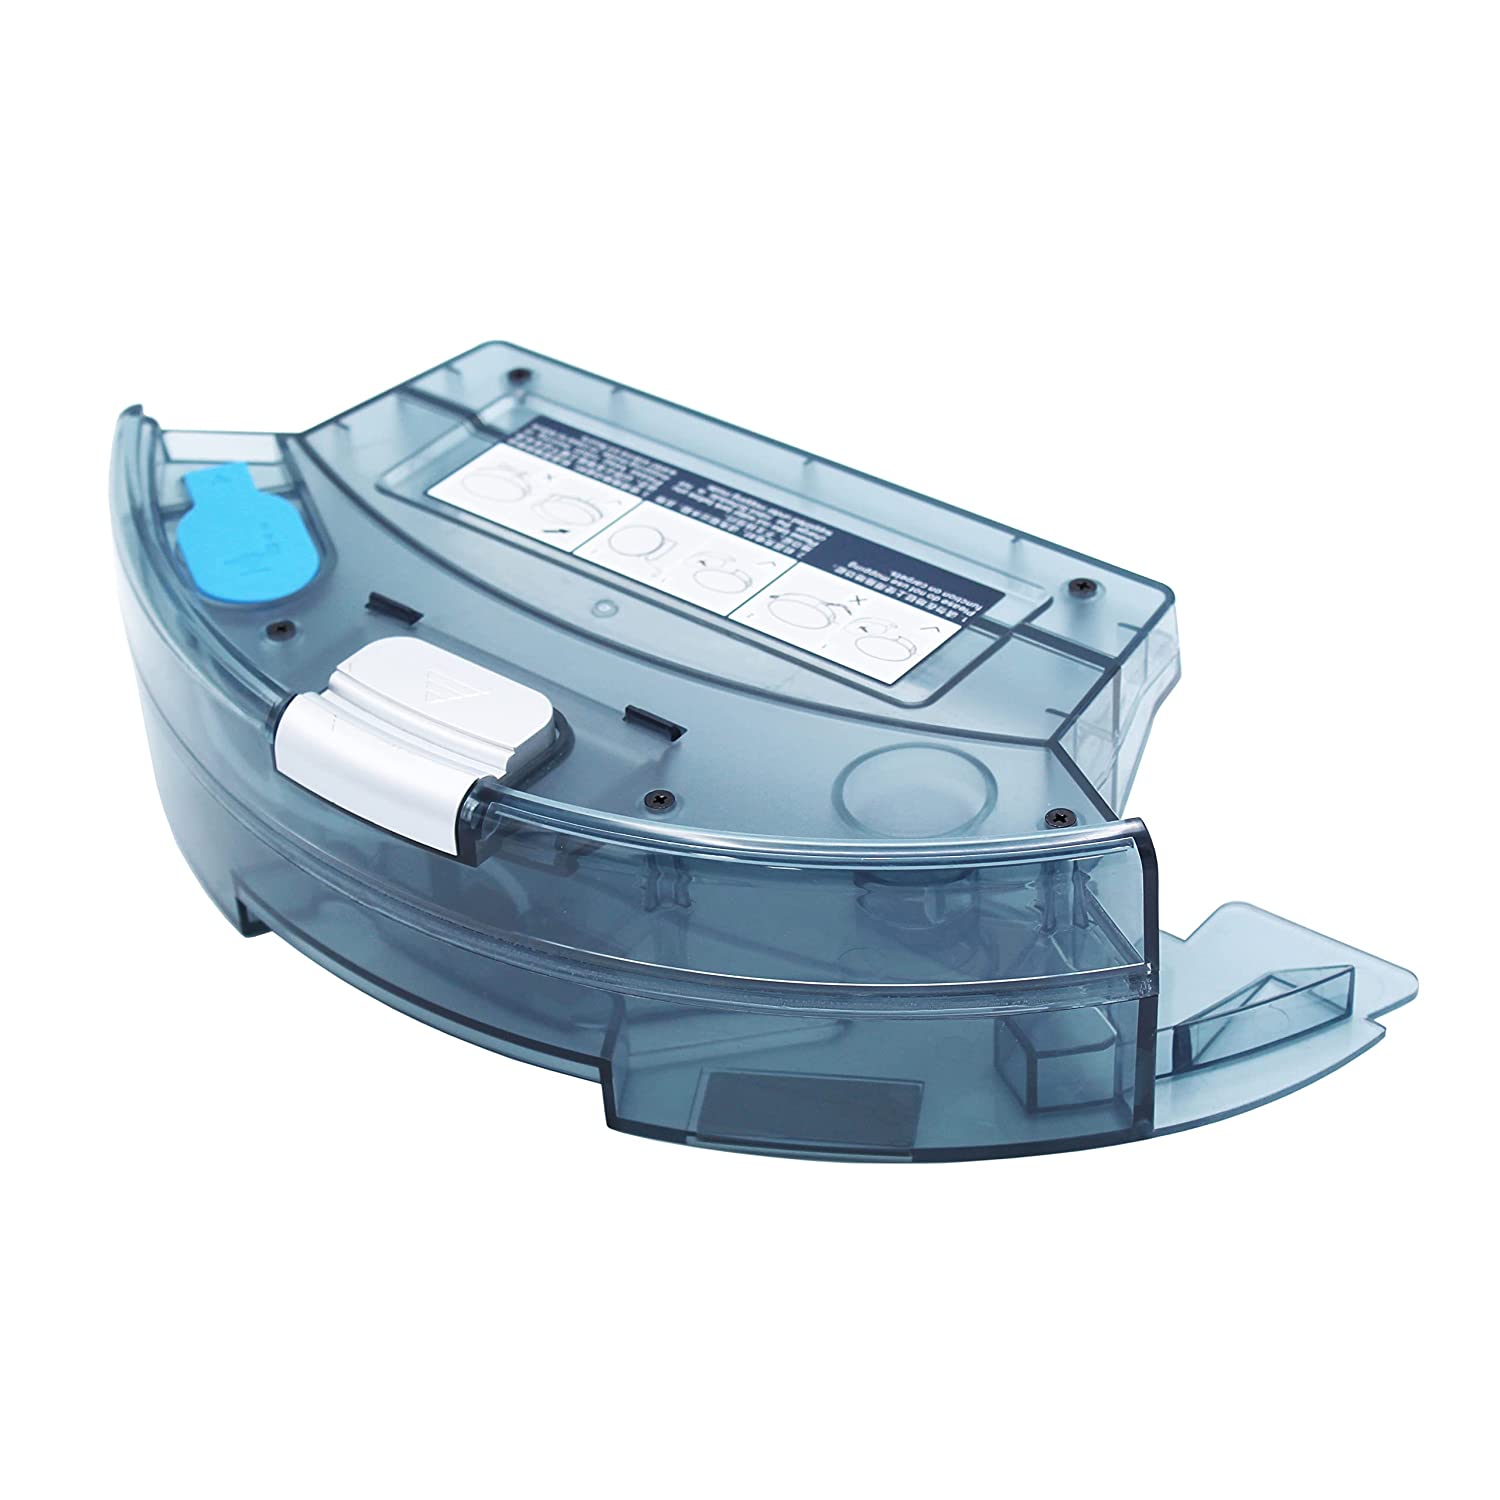 Robotic Vacuum Cleaner iLife X620 Water Tank Buy Online